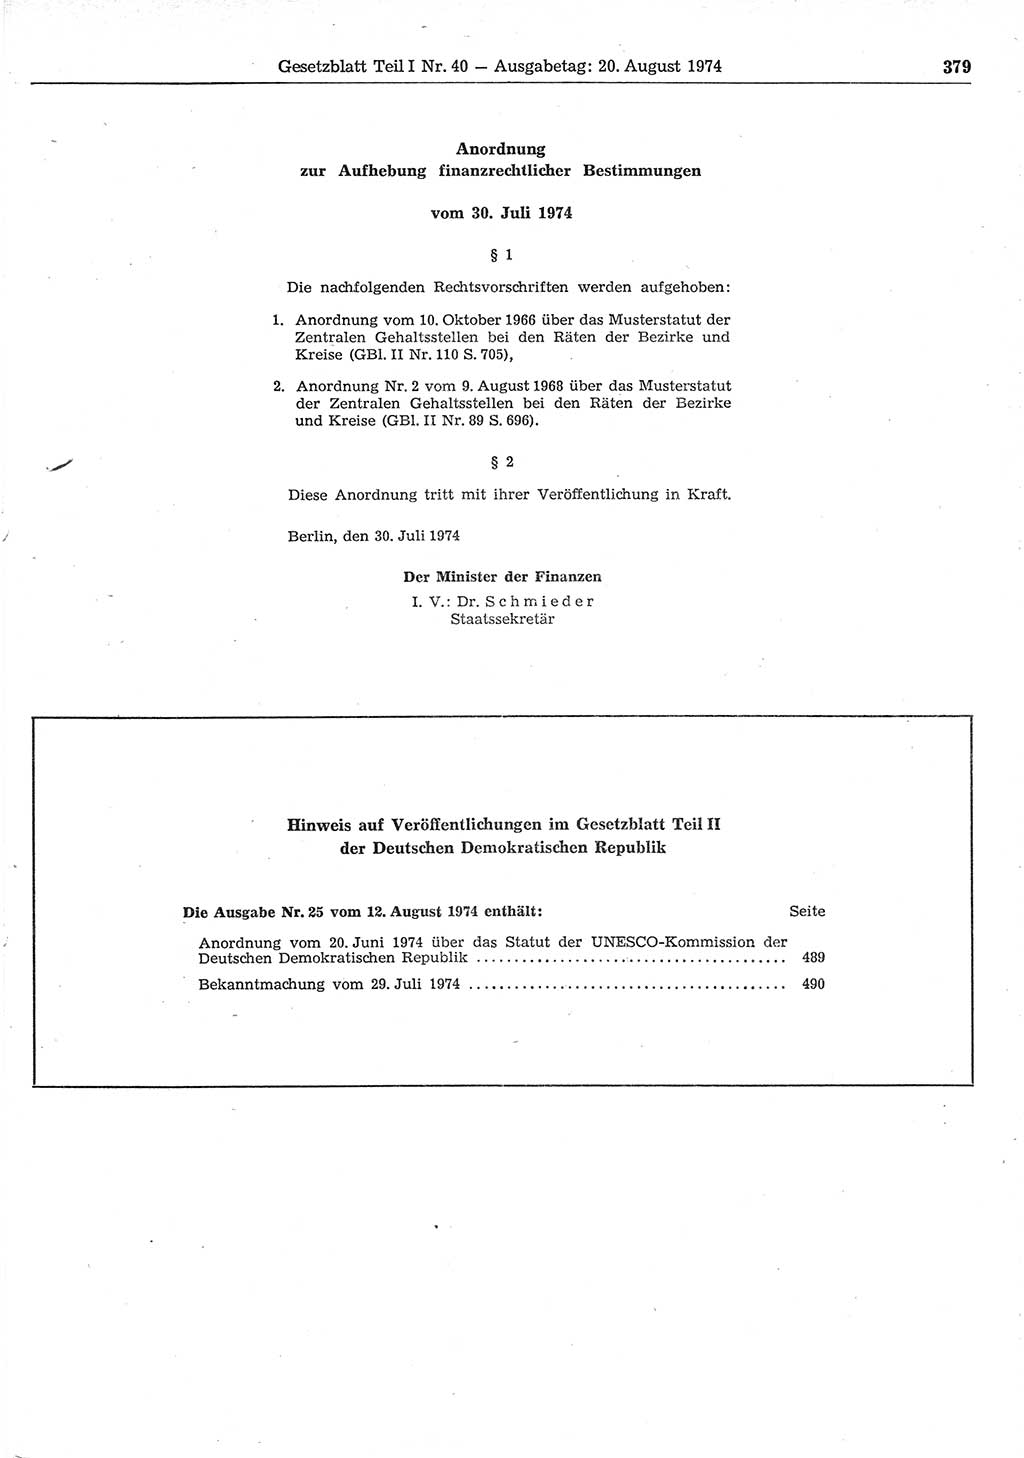 Gesetzblatt (GBl.) der Deutschen Demokratischen Republik (DDR) Teil Ⅰ 1974, Seite 379 (GBl. DDR Ⅰ 1974, S. 379)